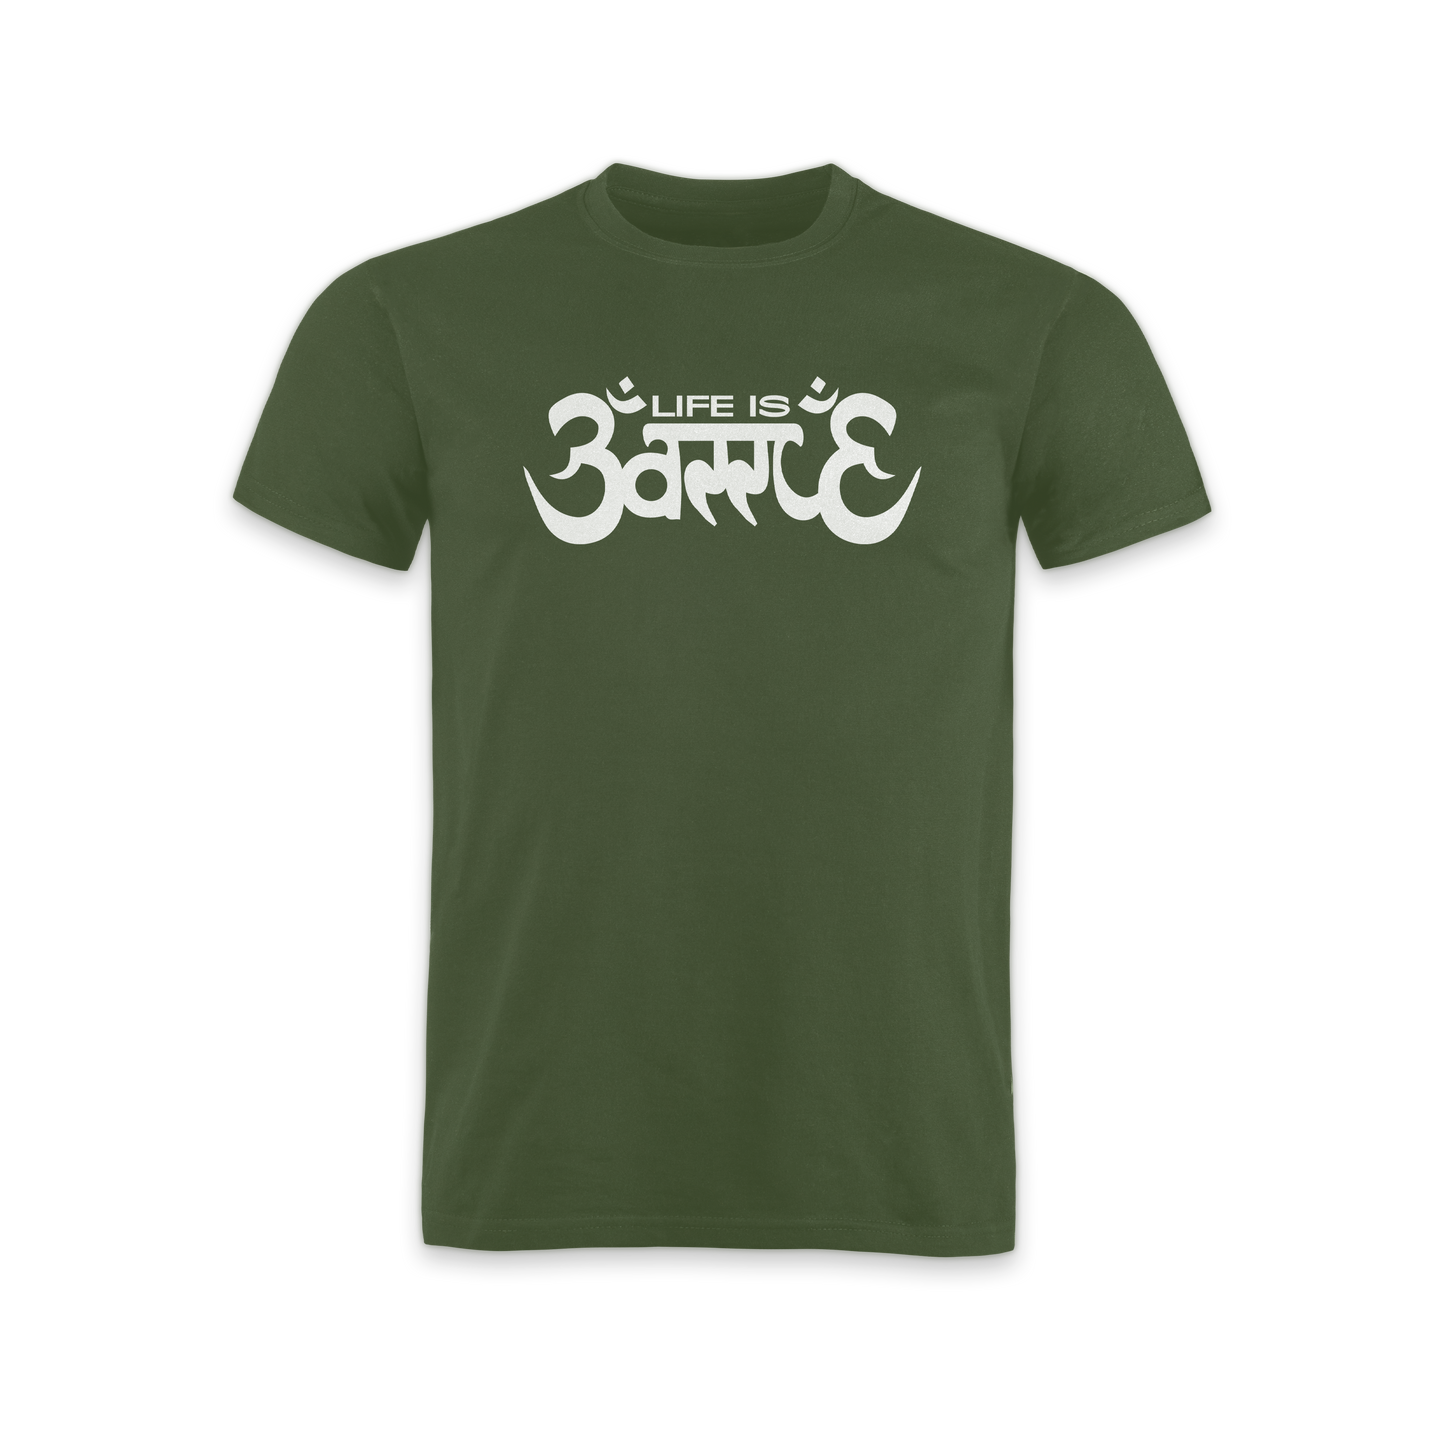 "Life is Battle" T-Shirt green edit.